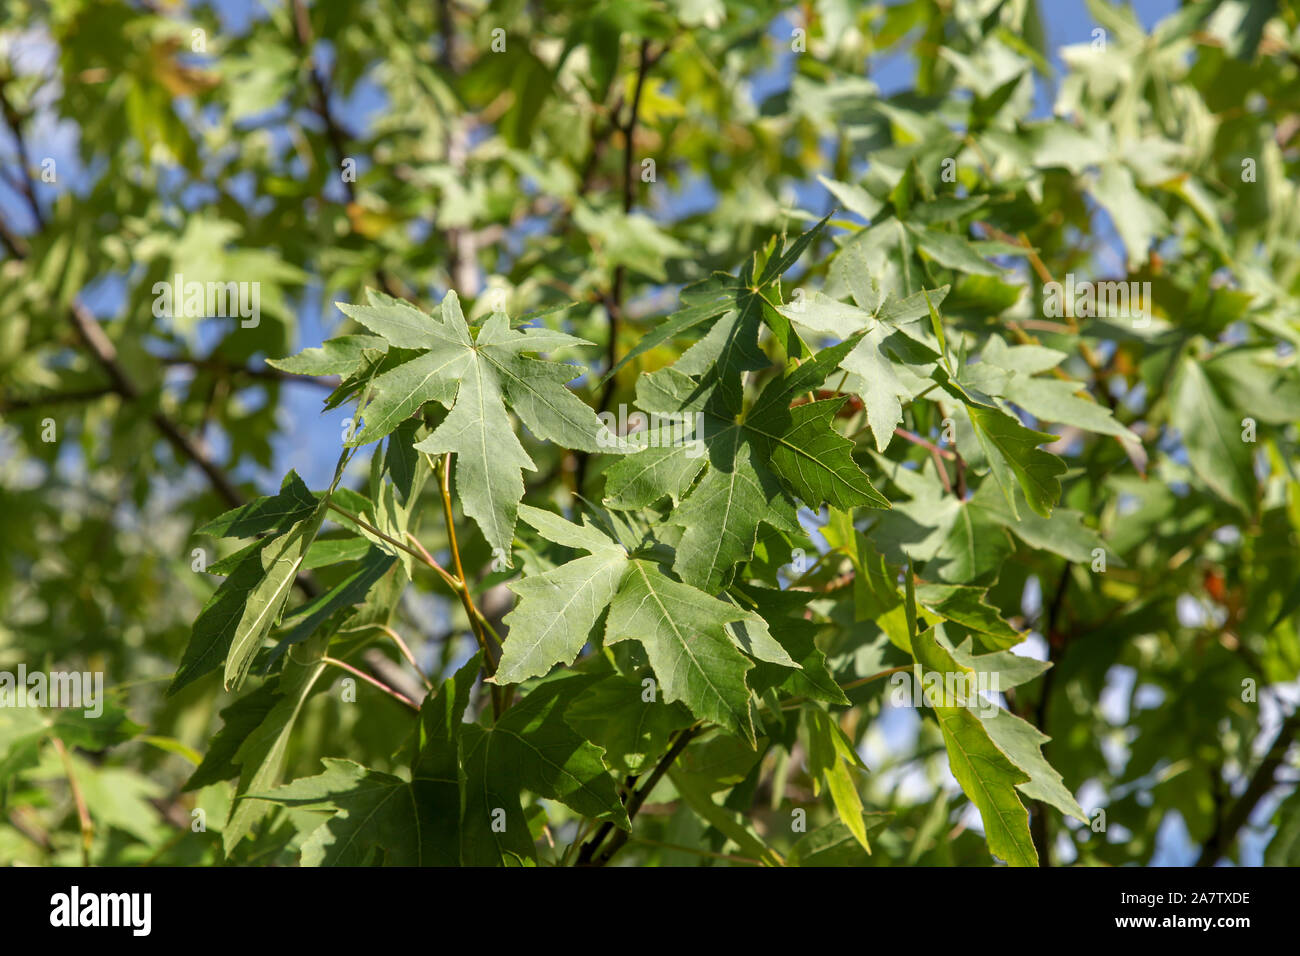 Palmate hojas de Roble Español (sweetgum en inglés) Americano (Liquidambar styraciflua) calle árbol, Londres Foto de stock